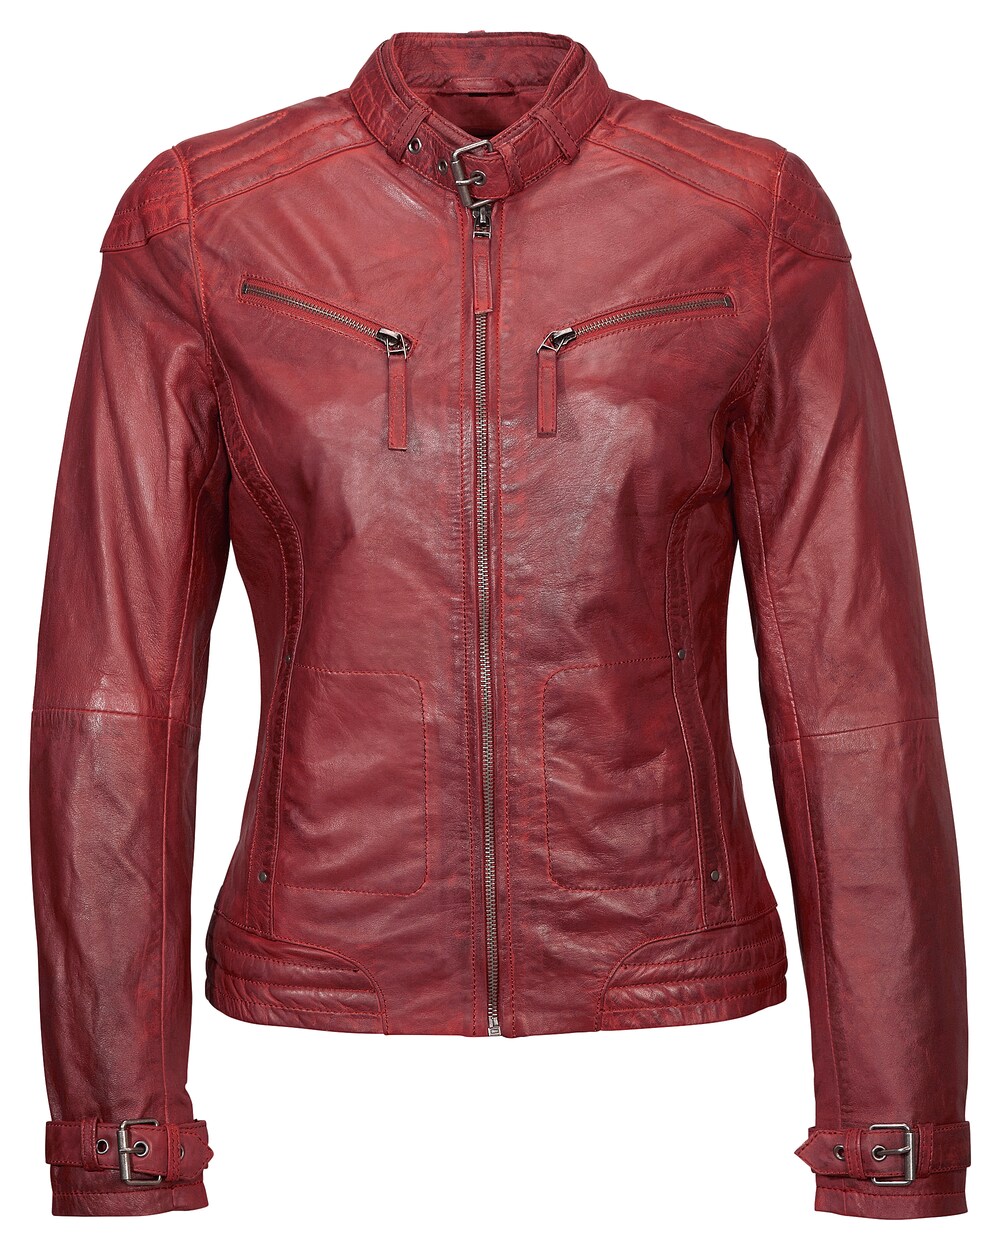 Межсезонная куртка MUSTANG Ryana, пастельно-красный межсезонная куртка mustang ryana коричневый